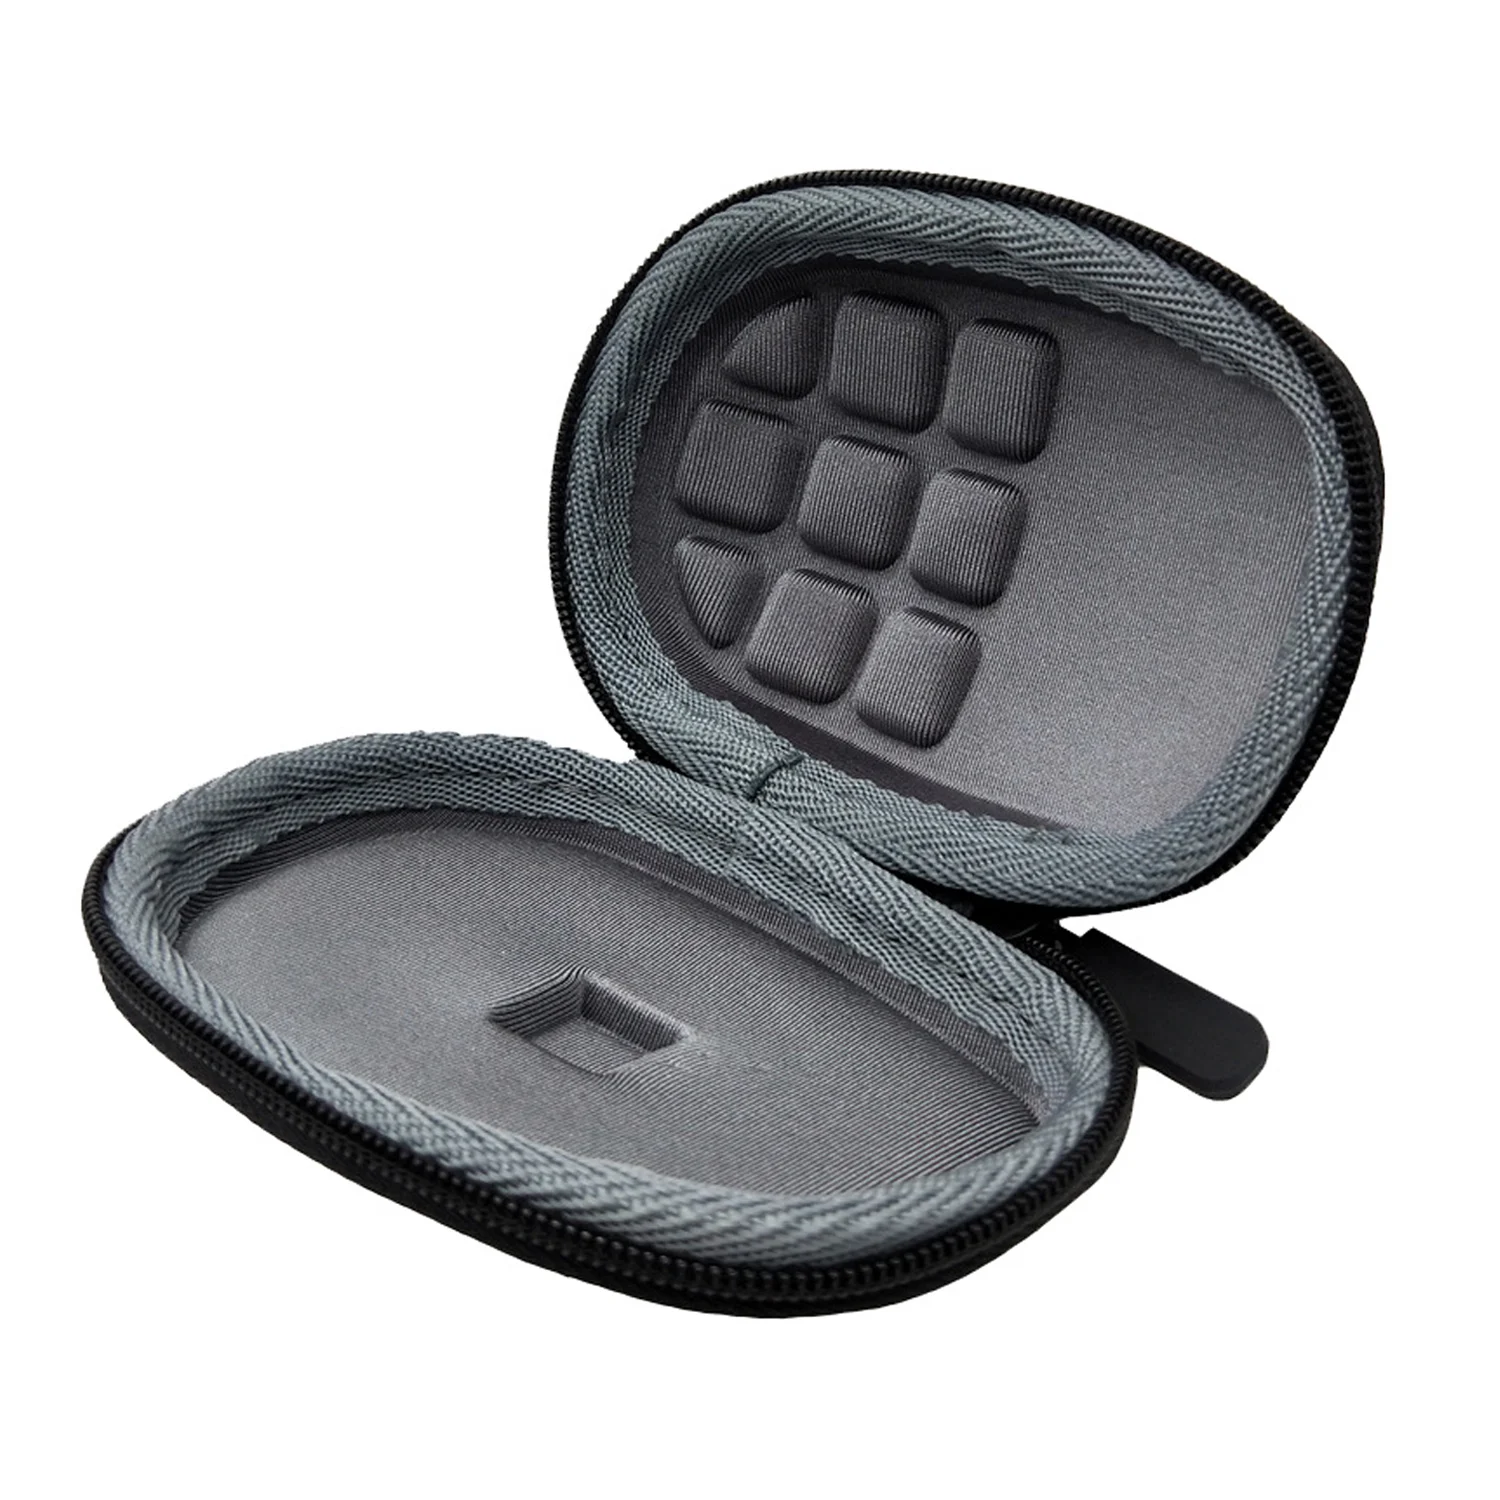 Besegad портативный чехол для кабеля для хранения, защитная сумка-чехол, водонепроницаемый ударопрочный чехол для lotech MX Anywhere 2 S mouse